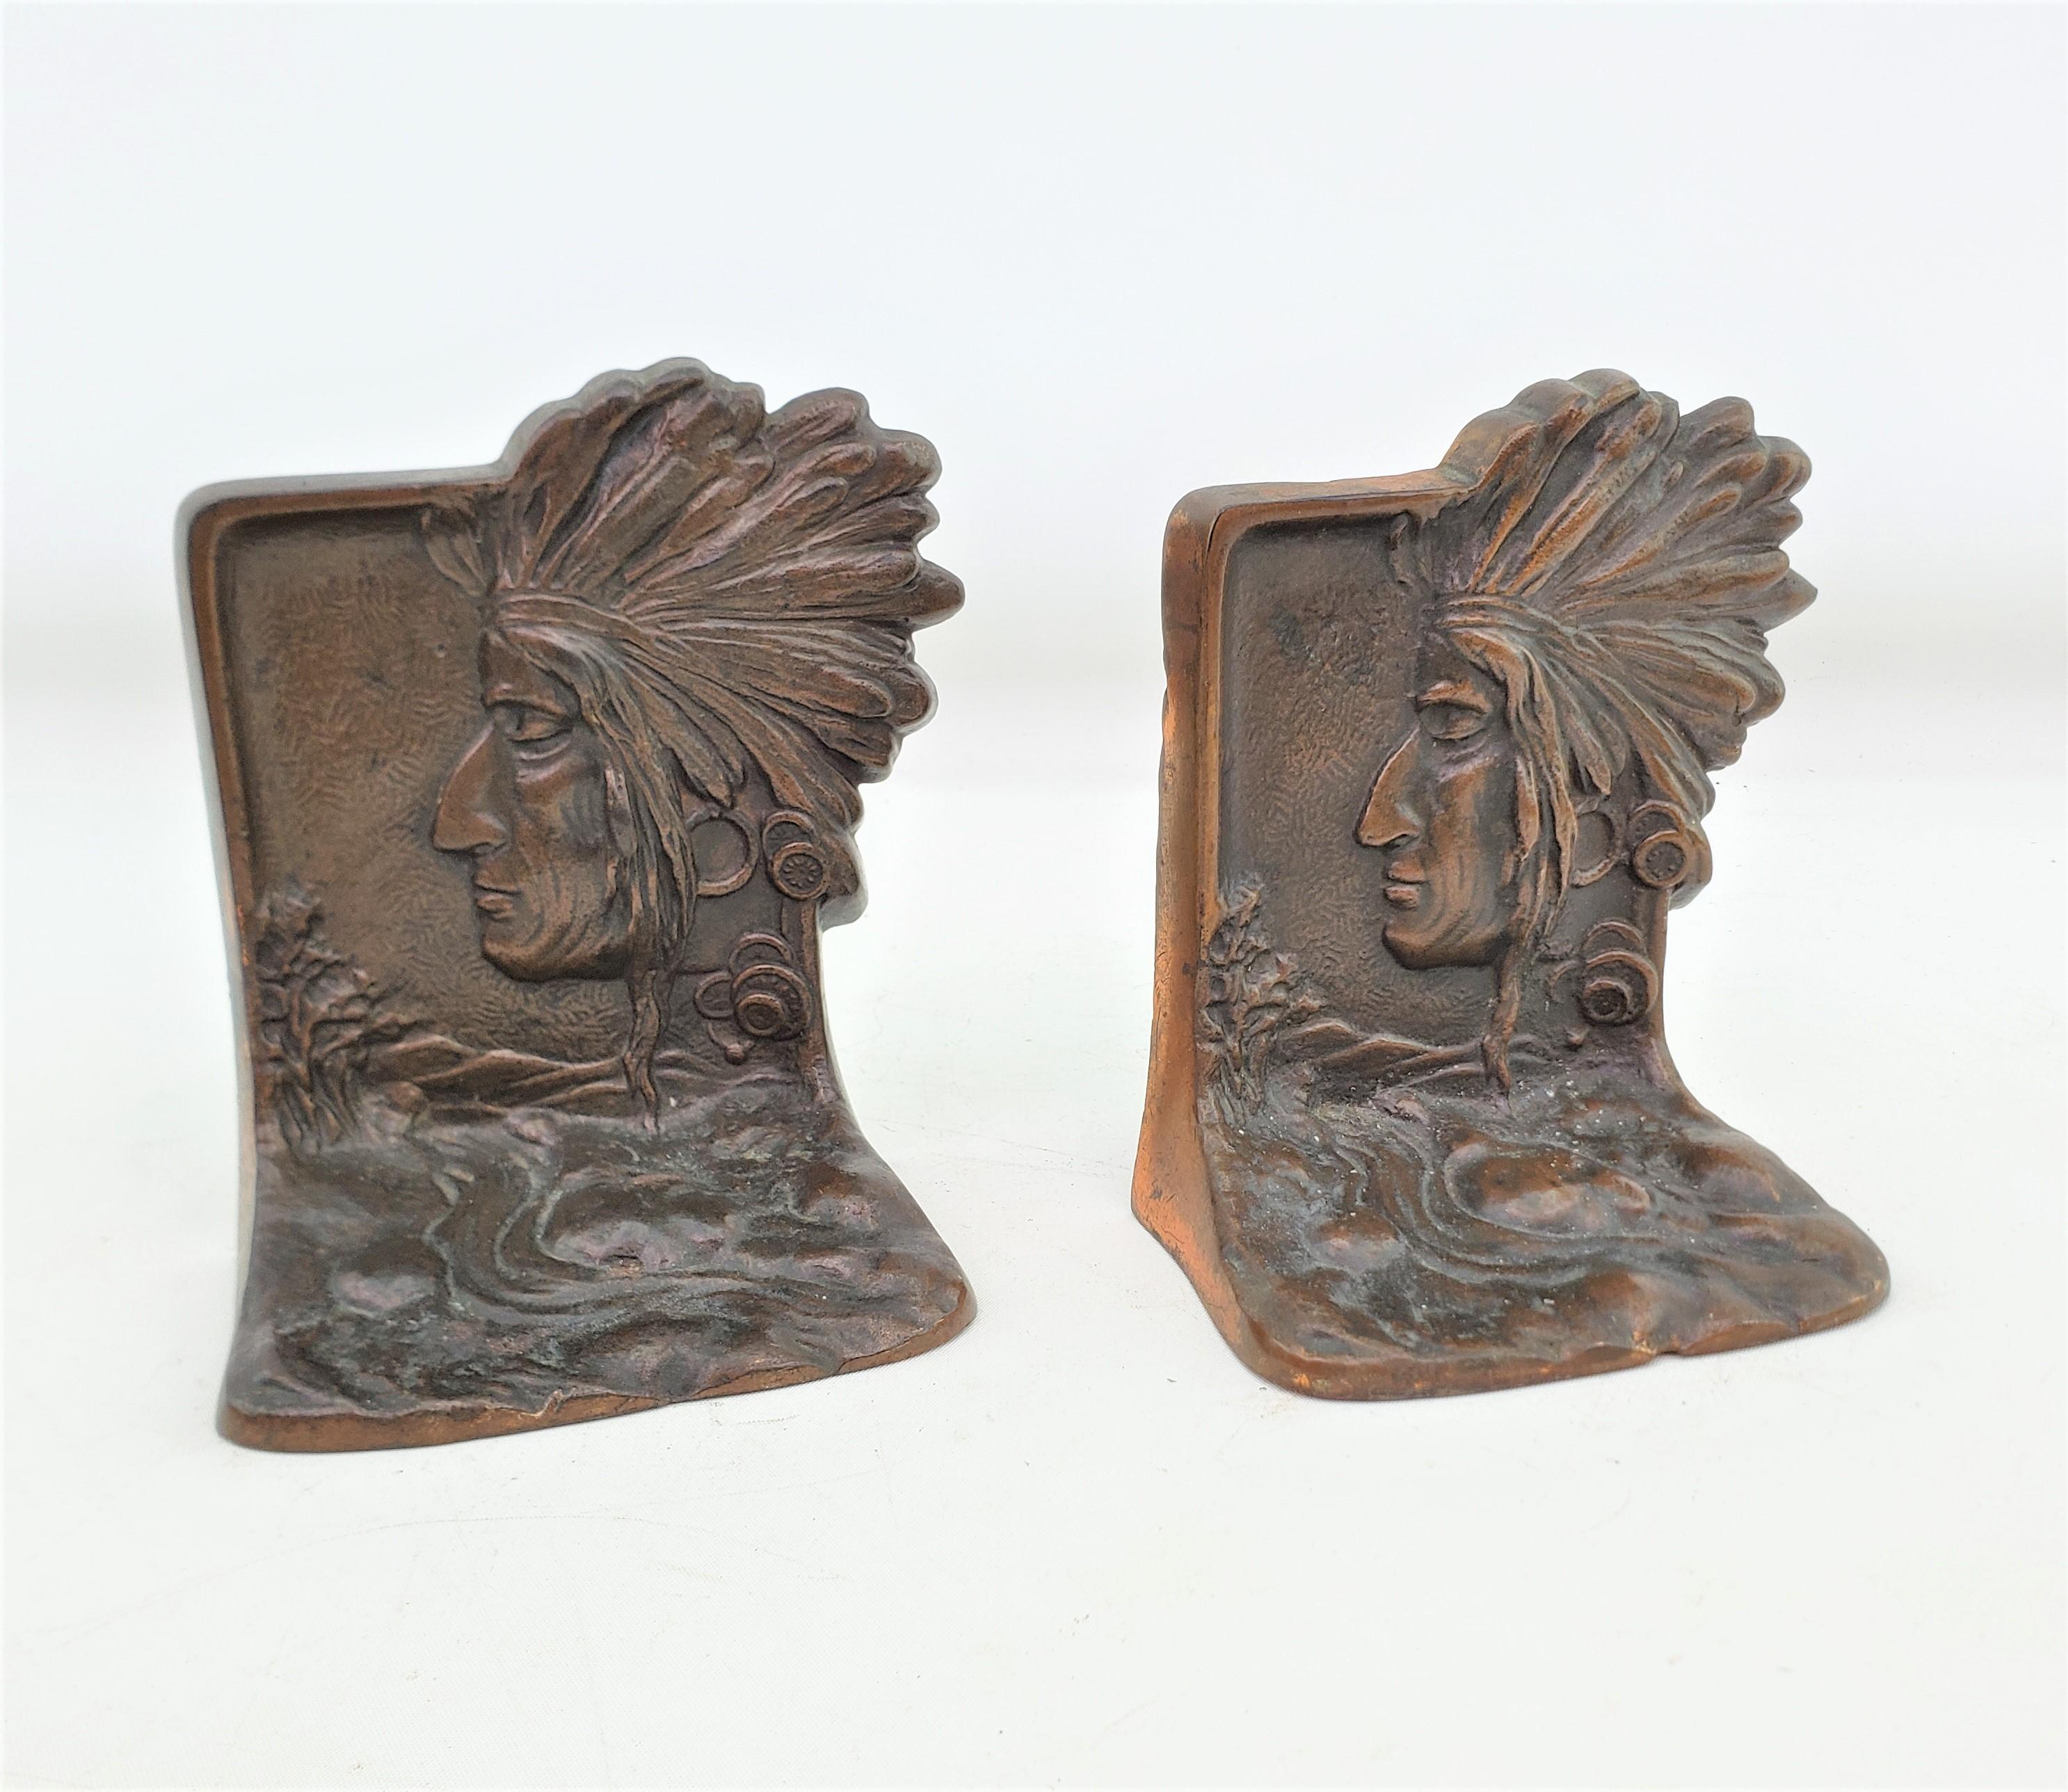 Dieses Paar antiker Buchstützen ist unsigniert, stammt aber vermutlich aus den Vereinigten Staaten und wurde um 1920 im Art-déco-Stil gefertigt. Die Buchstützen bestehen aus Stahlguss mit einer Patina aus Bronze und zeigen das Profil eines indigenen